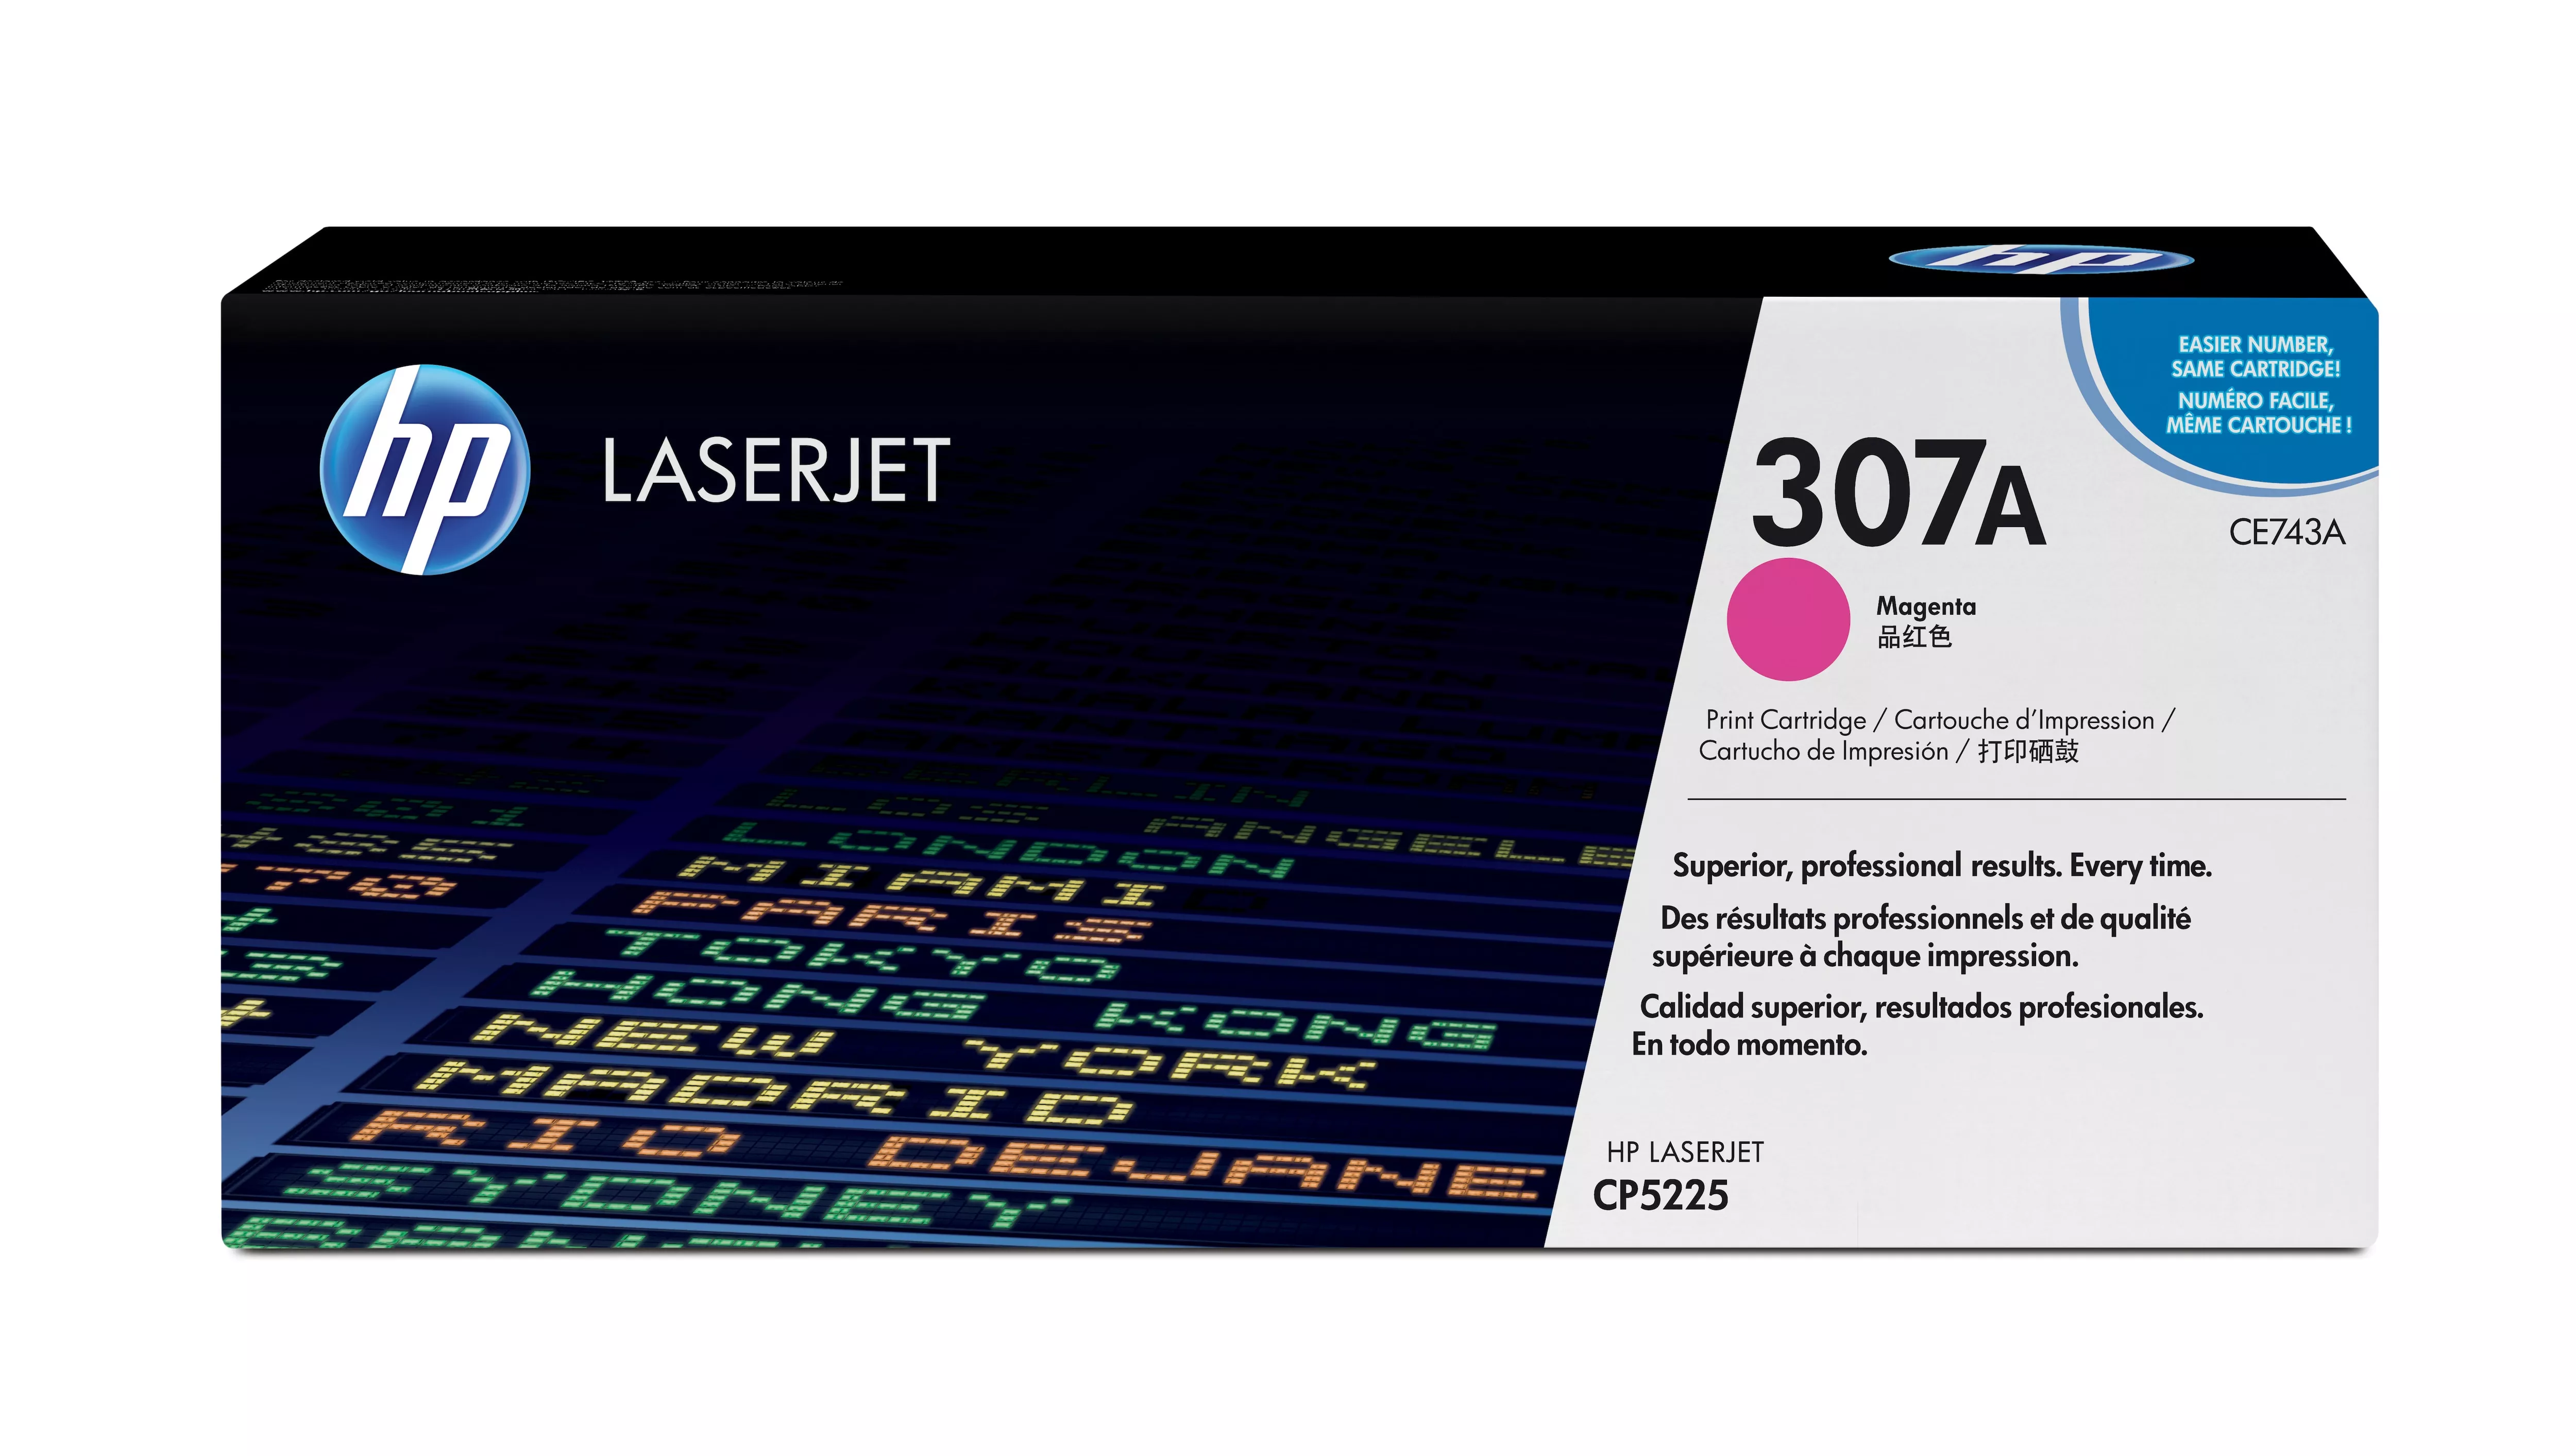 Achat HP original Colour LaserJet CE743A Toner cartridge magenta au meilleur prix